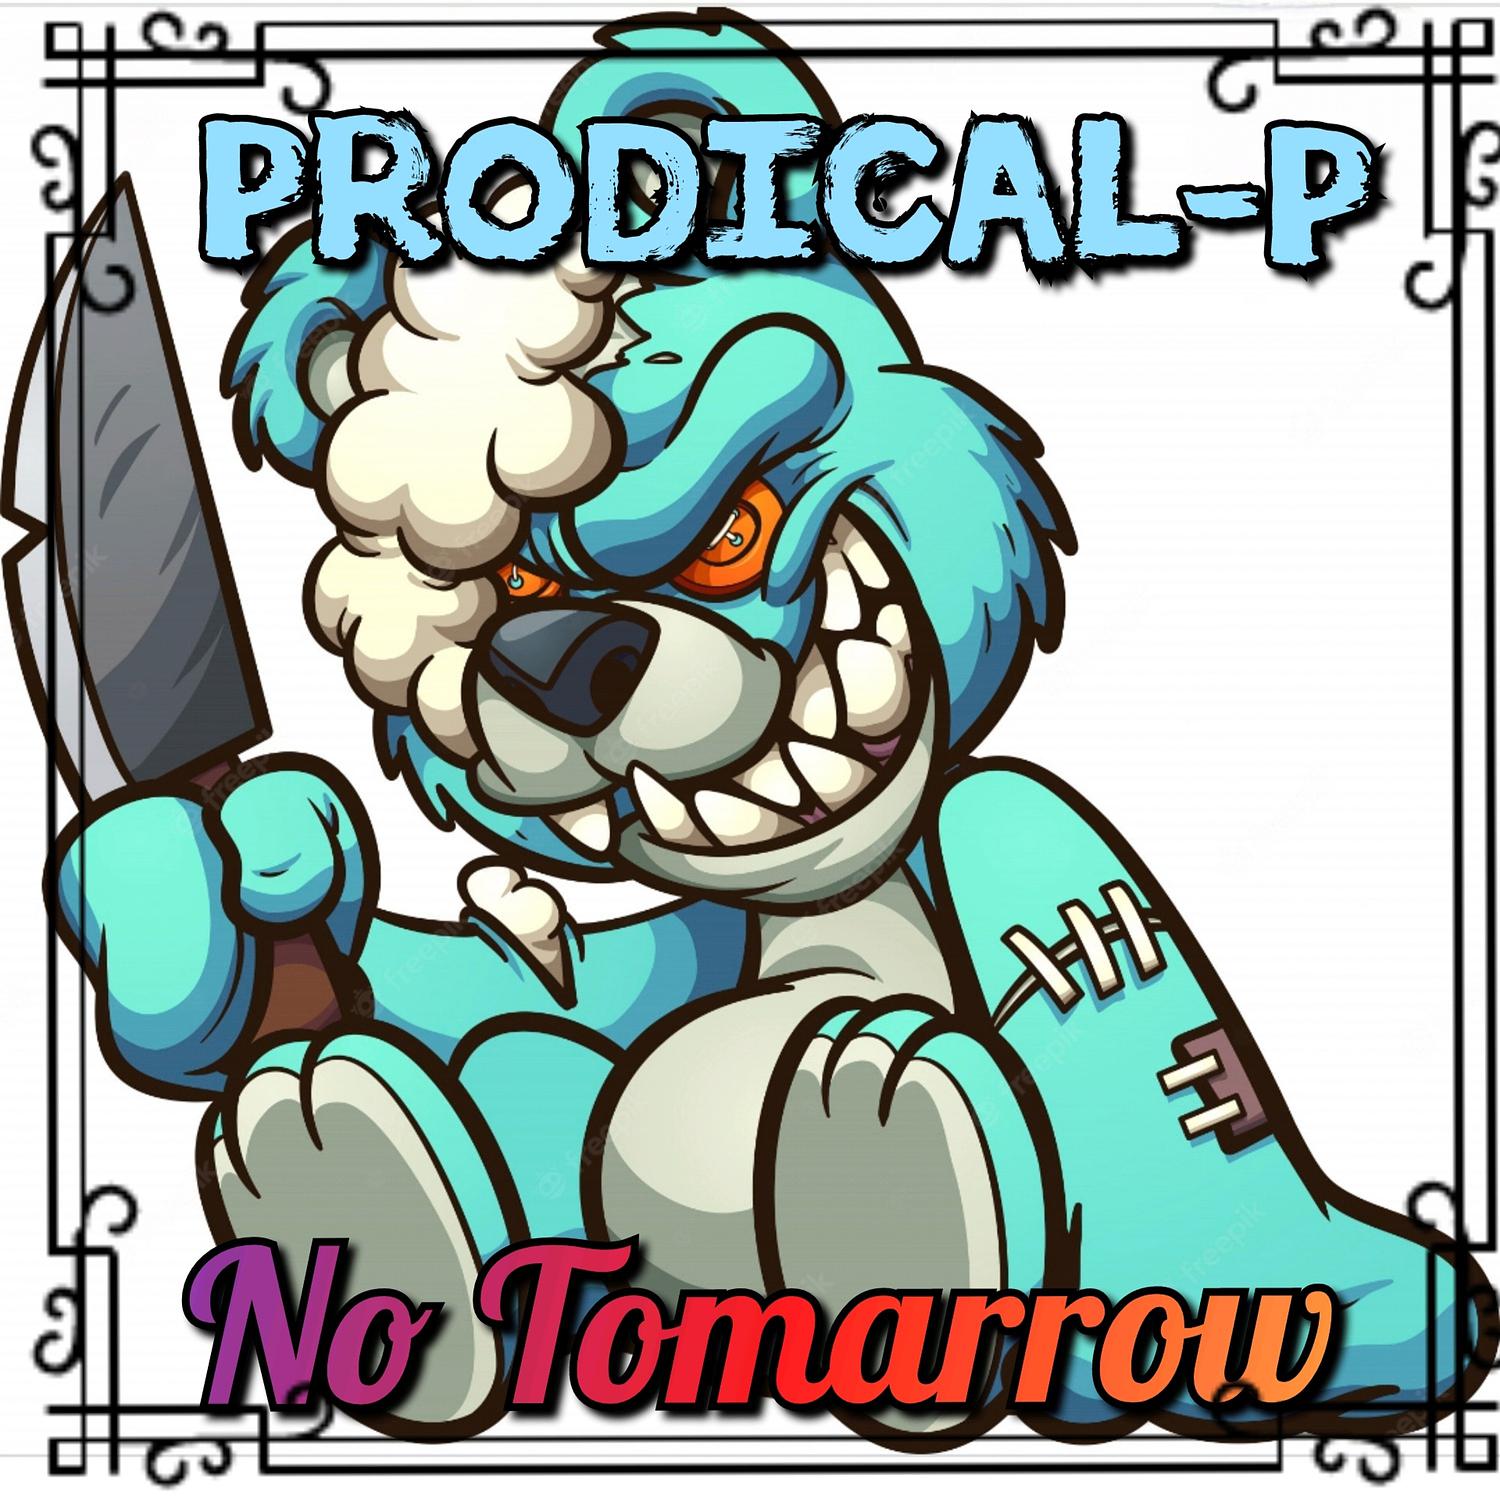 Prodical-P - No Tomarrow